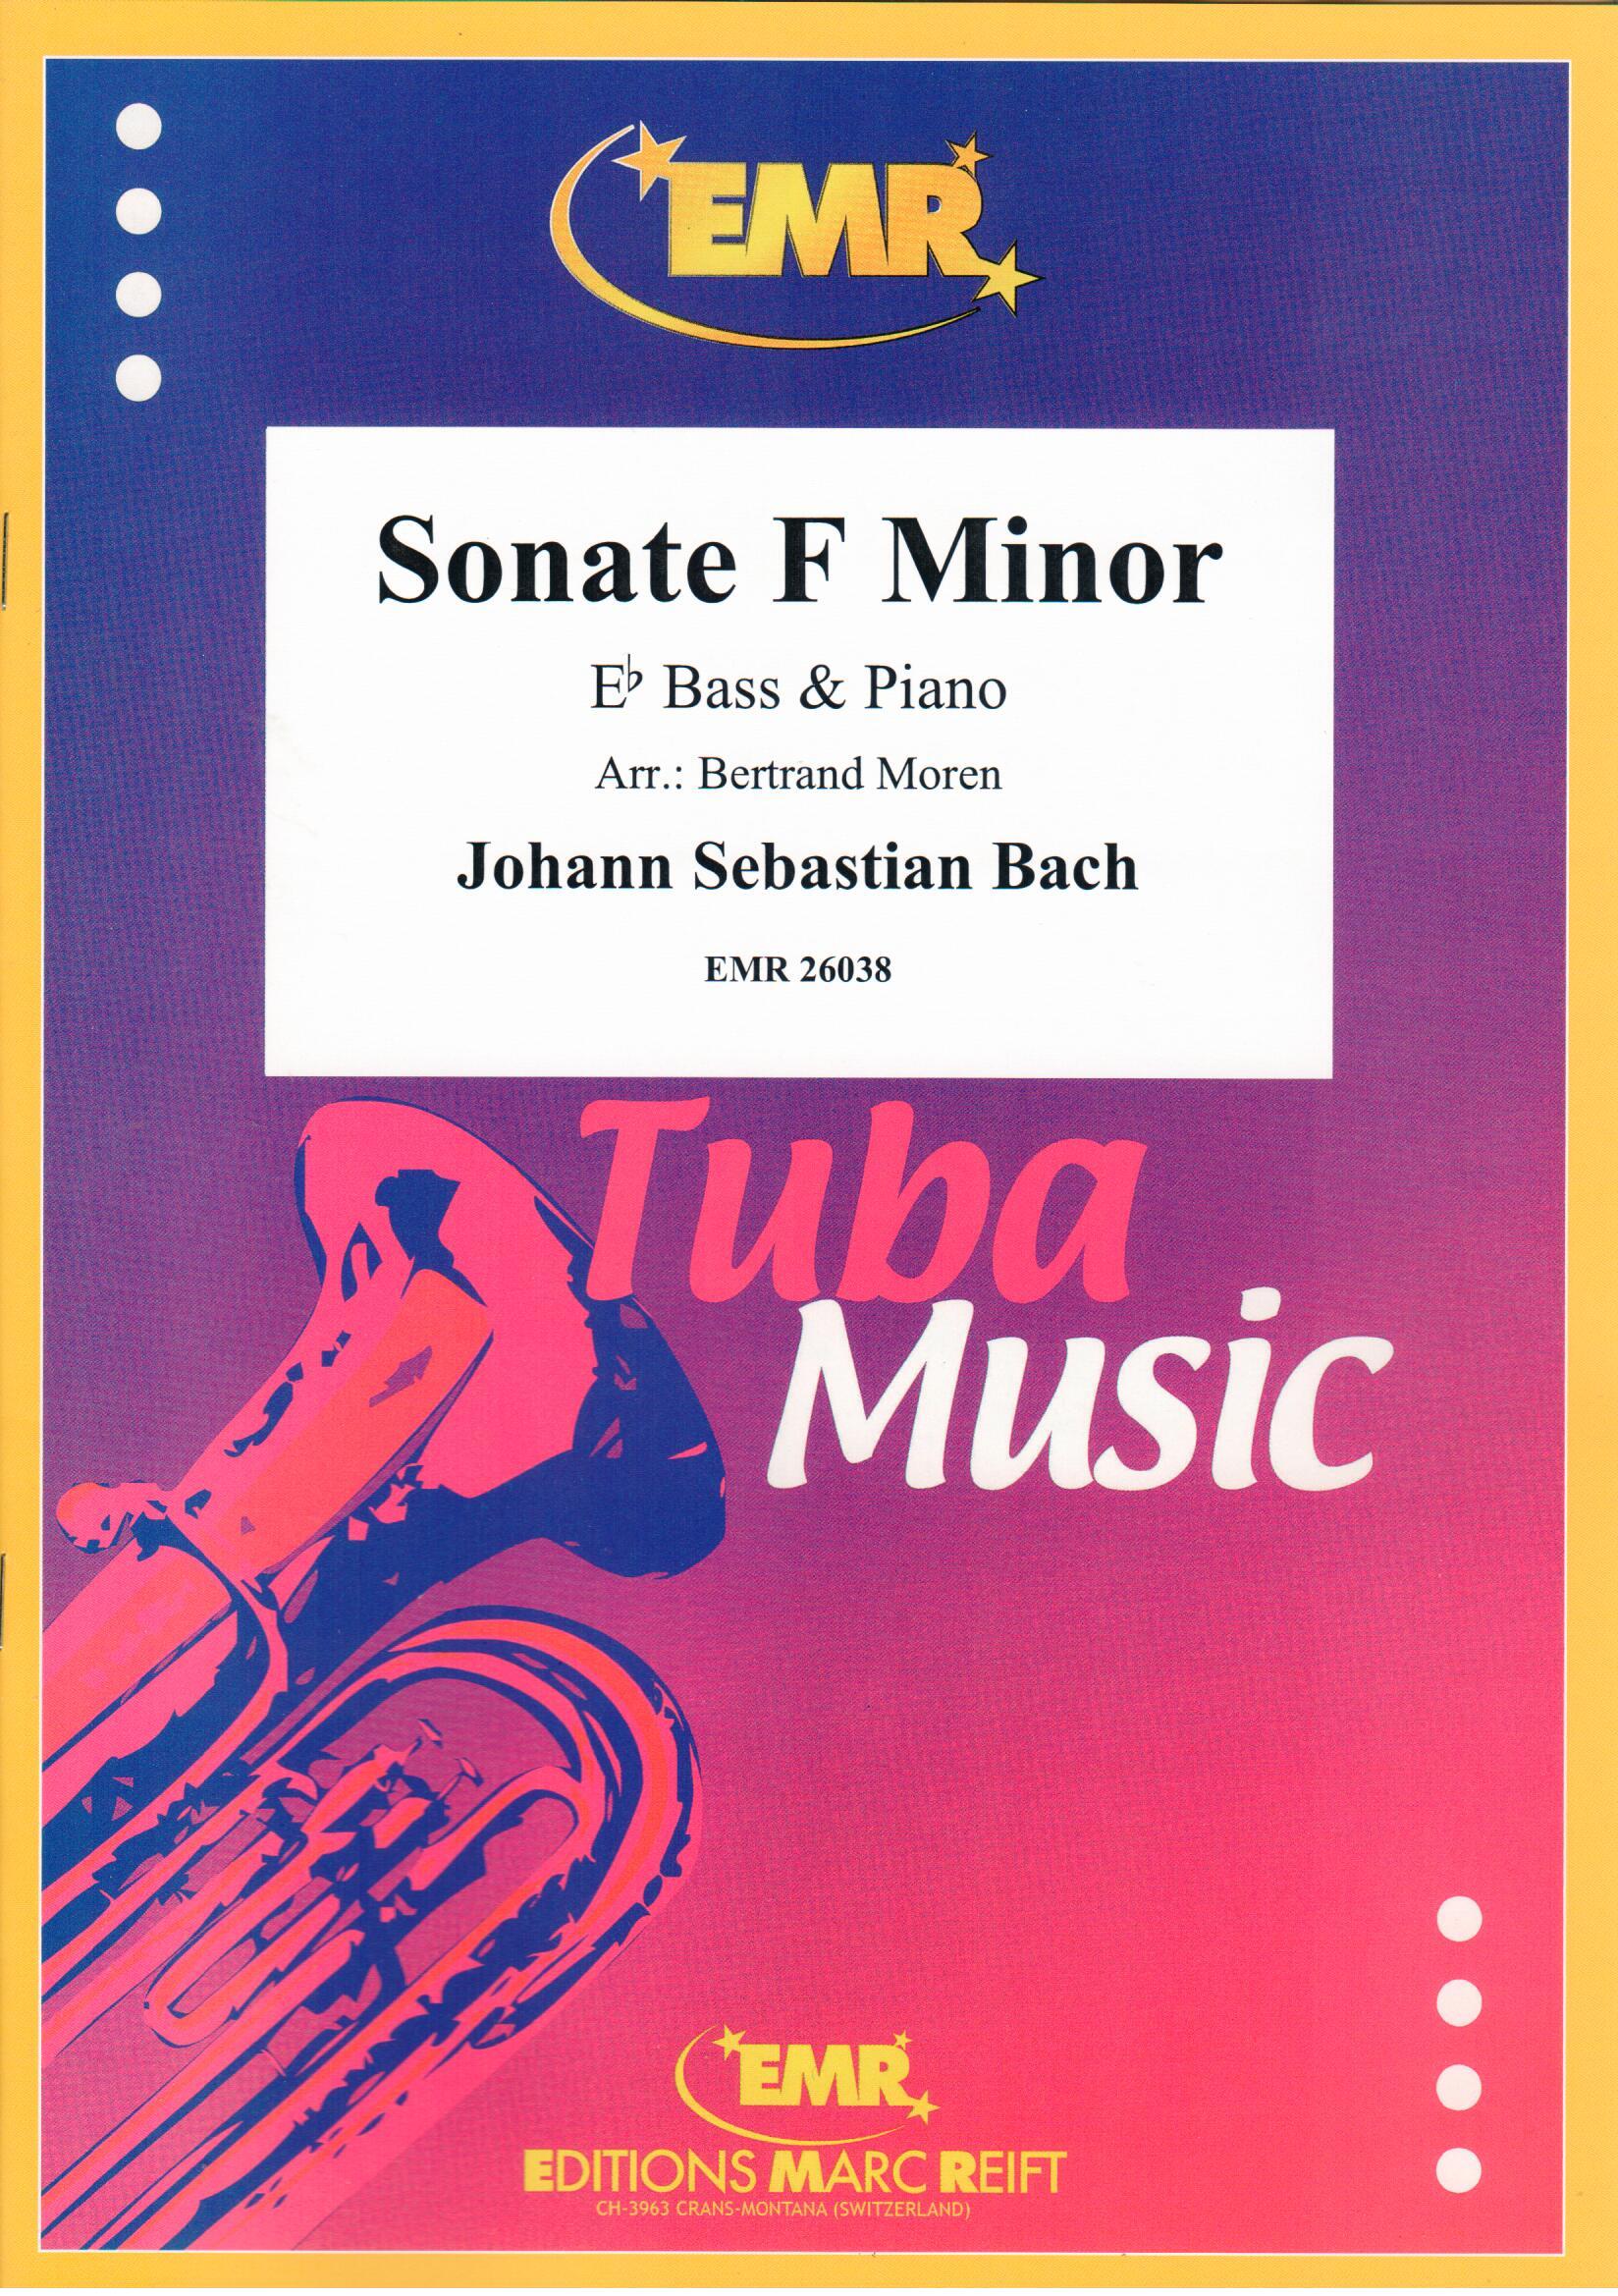 SONATE F MINOR, SOLOS - E♭. Bass